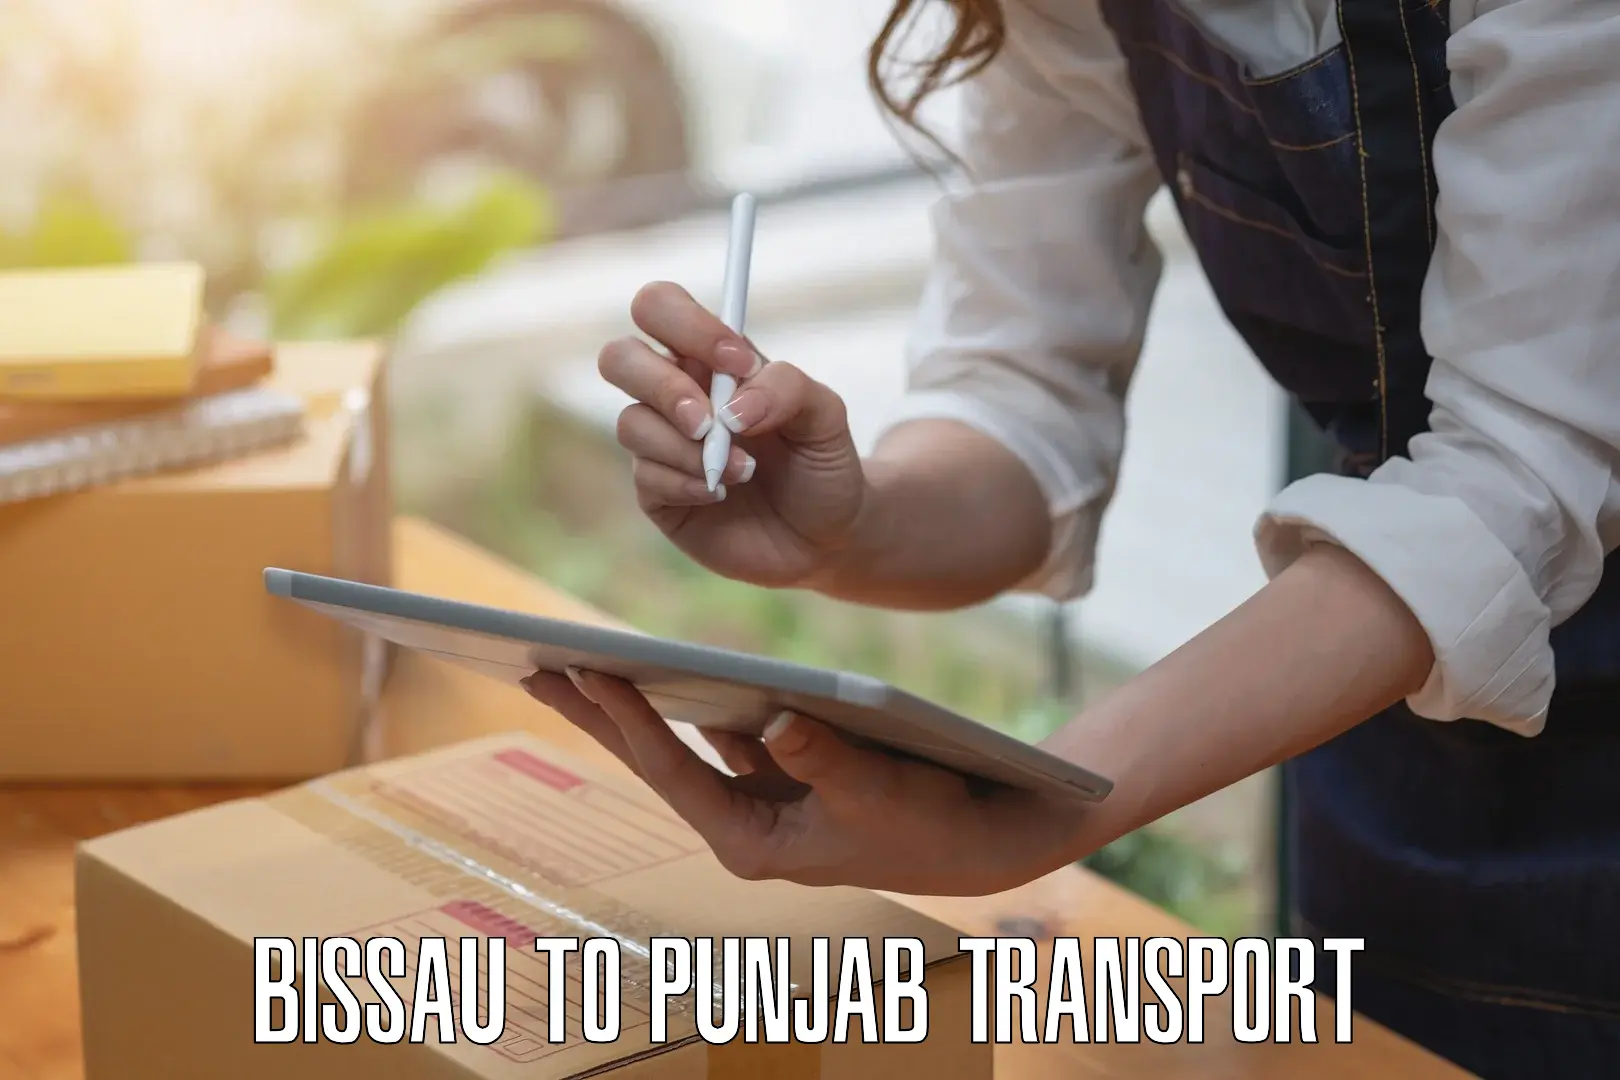 Two wheeler parcel service Bissau to Punjab